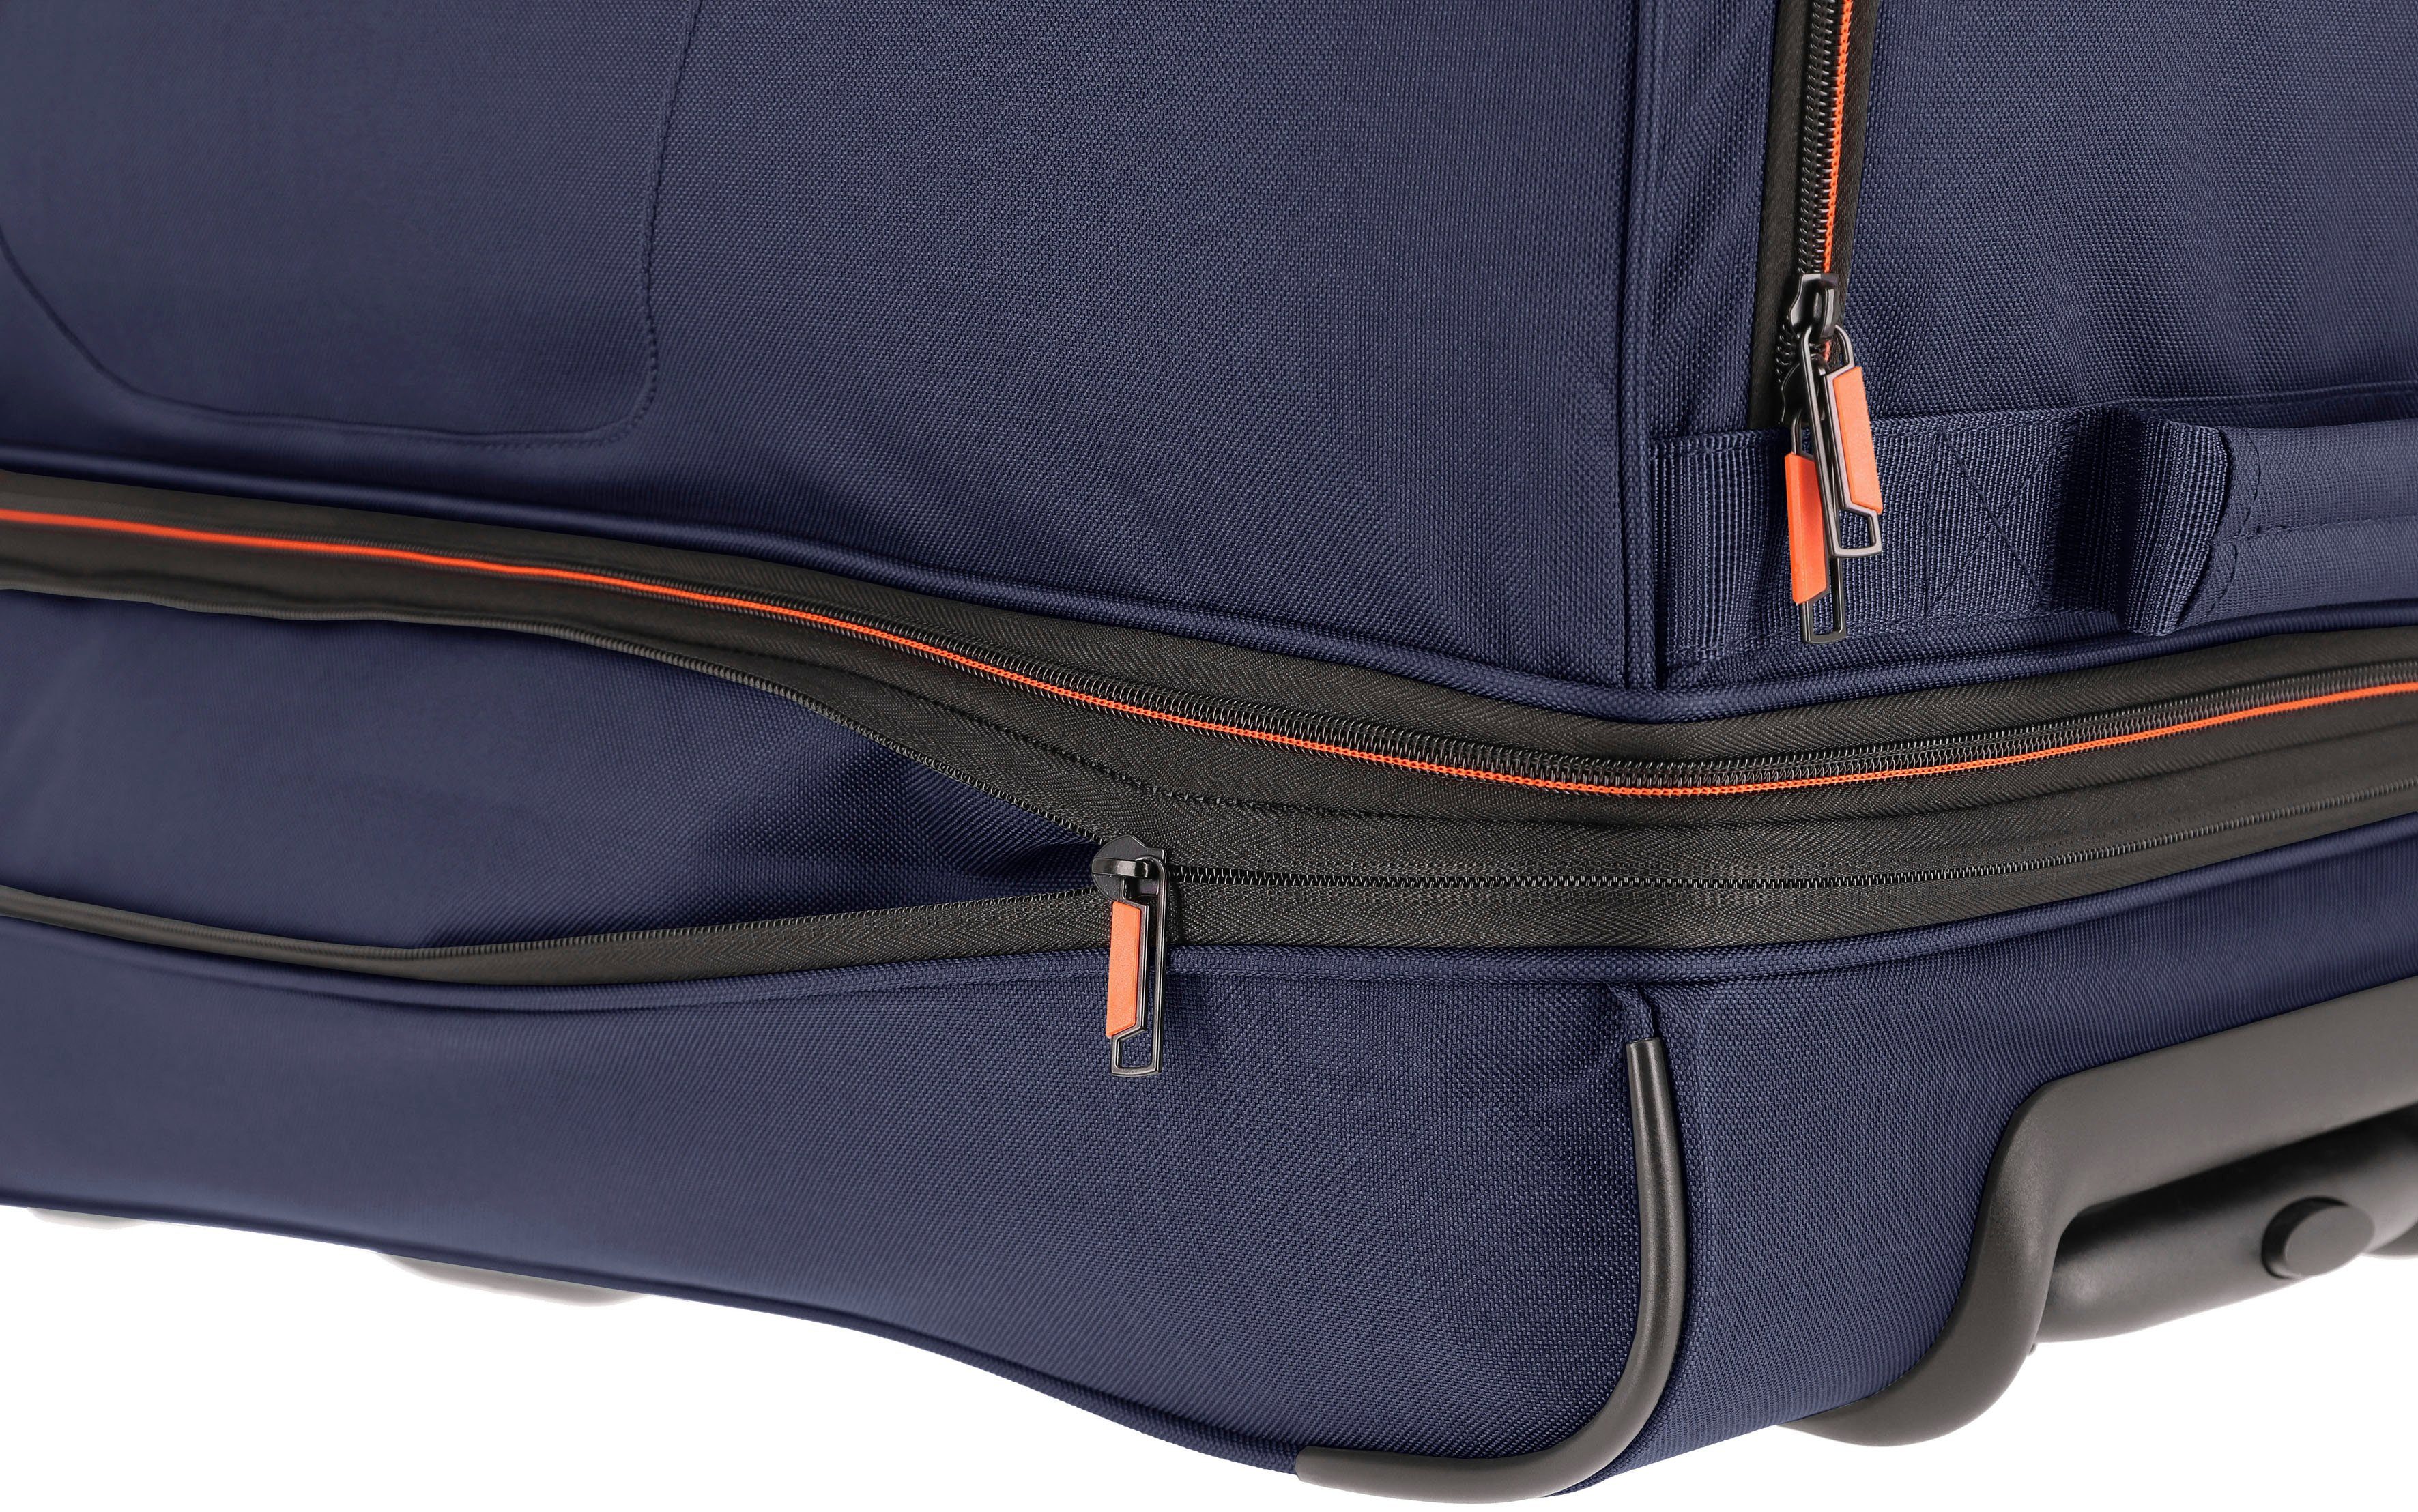 travelite Reisetasche Basics, 70 marine-orange mit cm, Trolleyfunktion Volumenerweiterung und